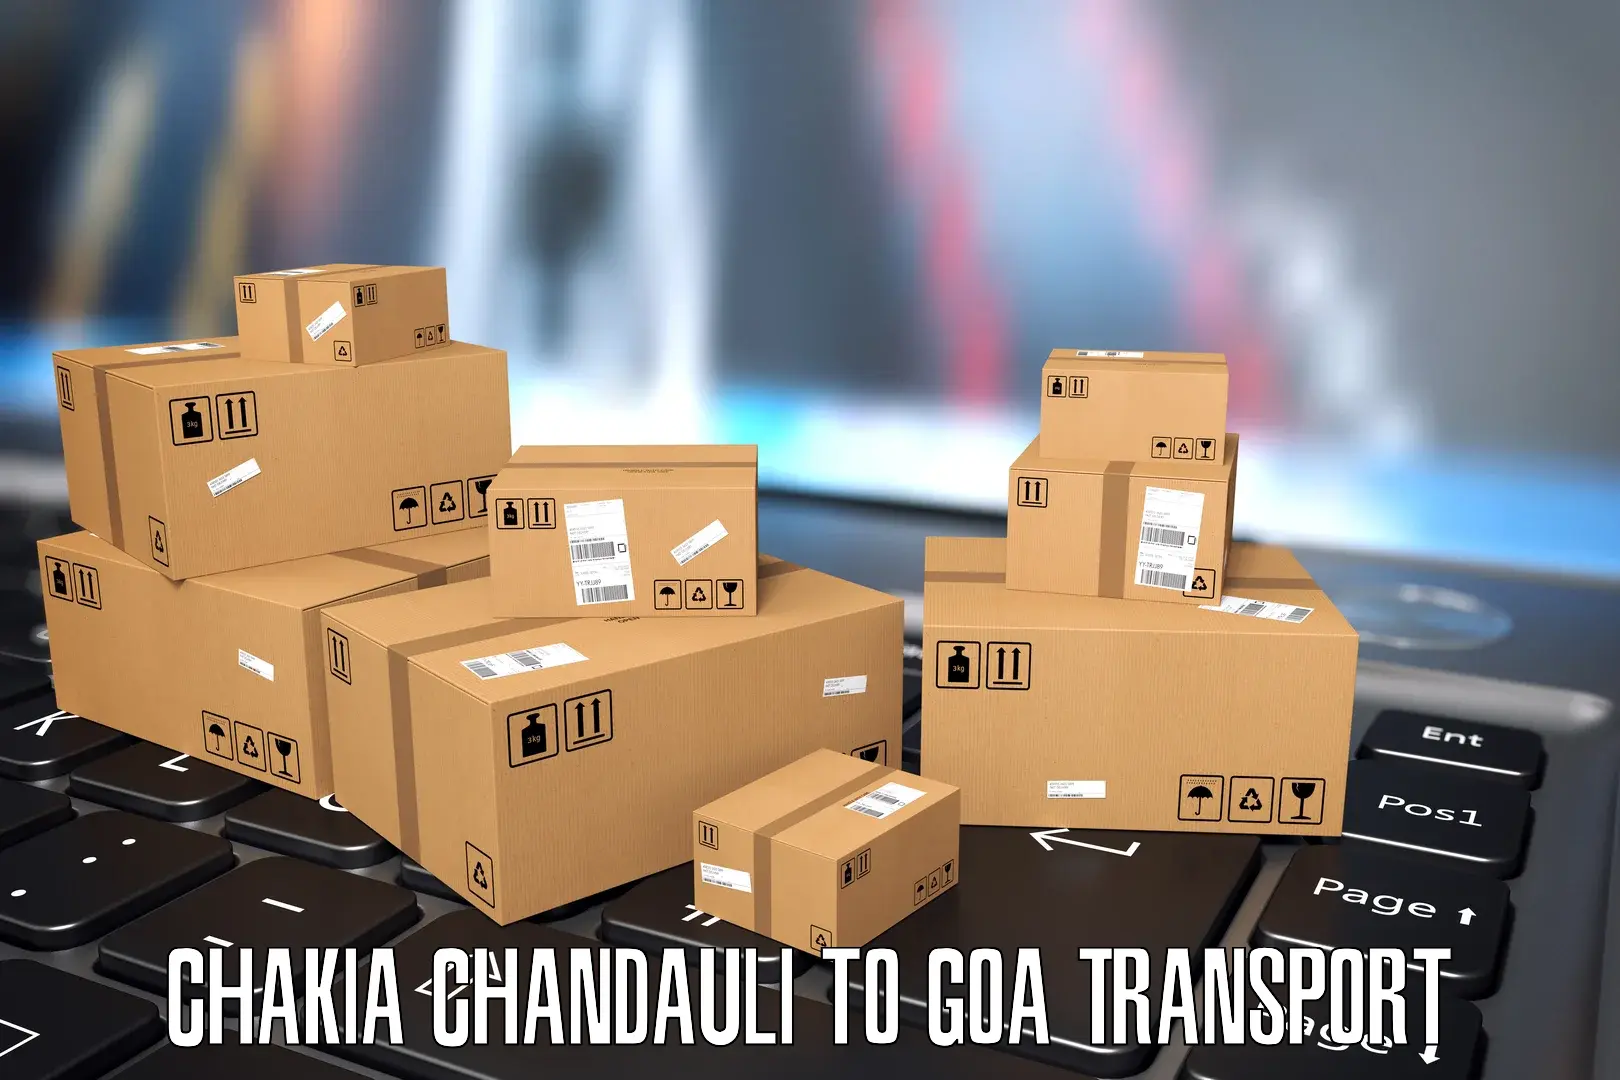 Cycle transportation service Chakia Chandauli to IIT Goa